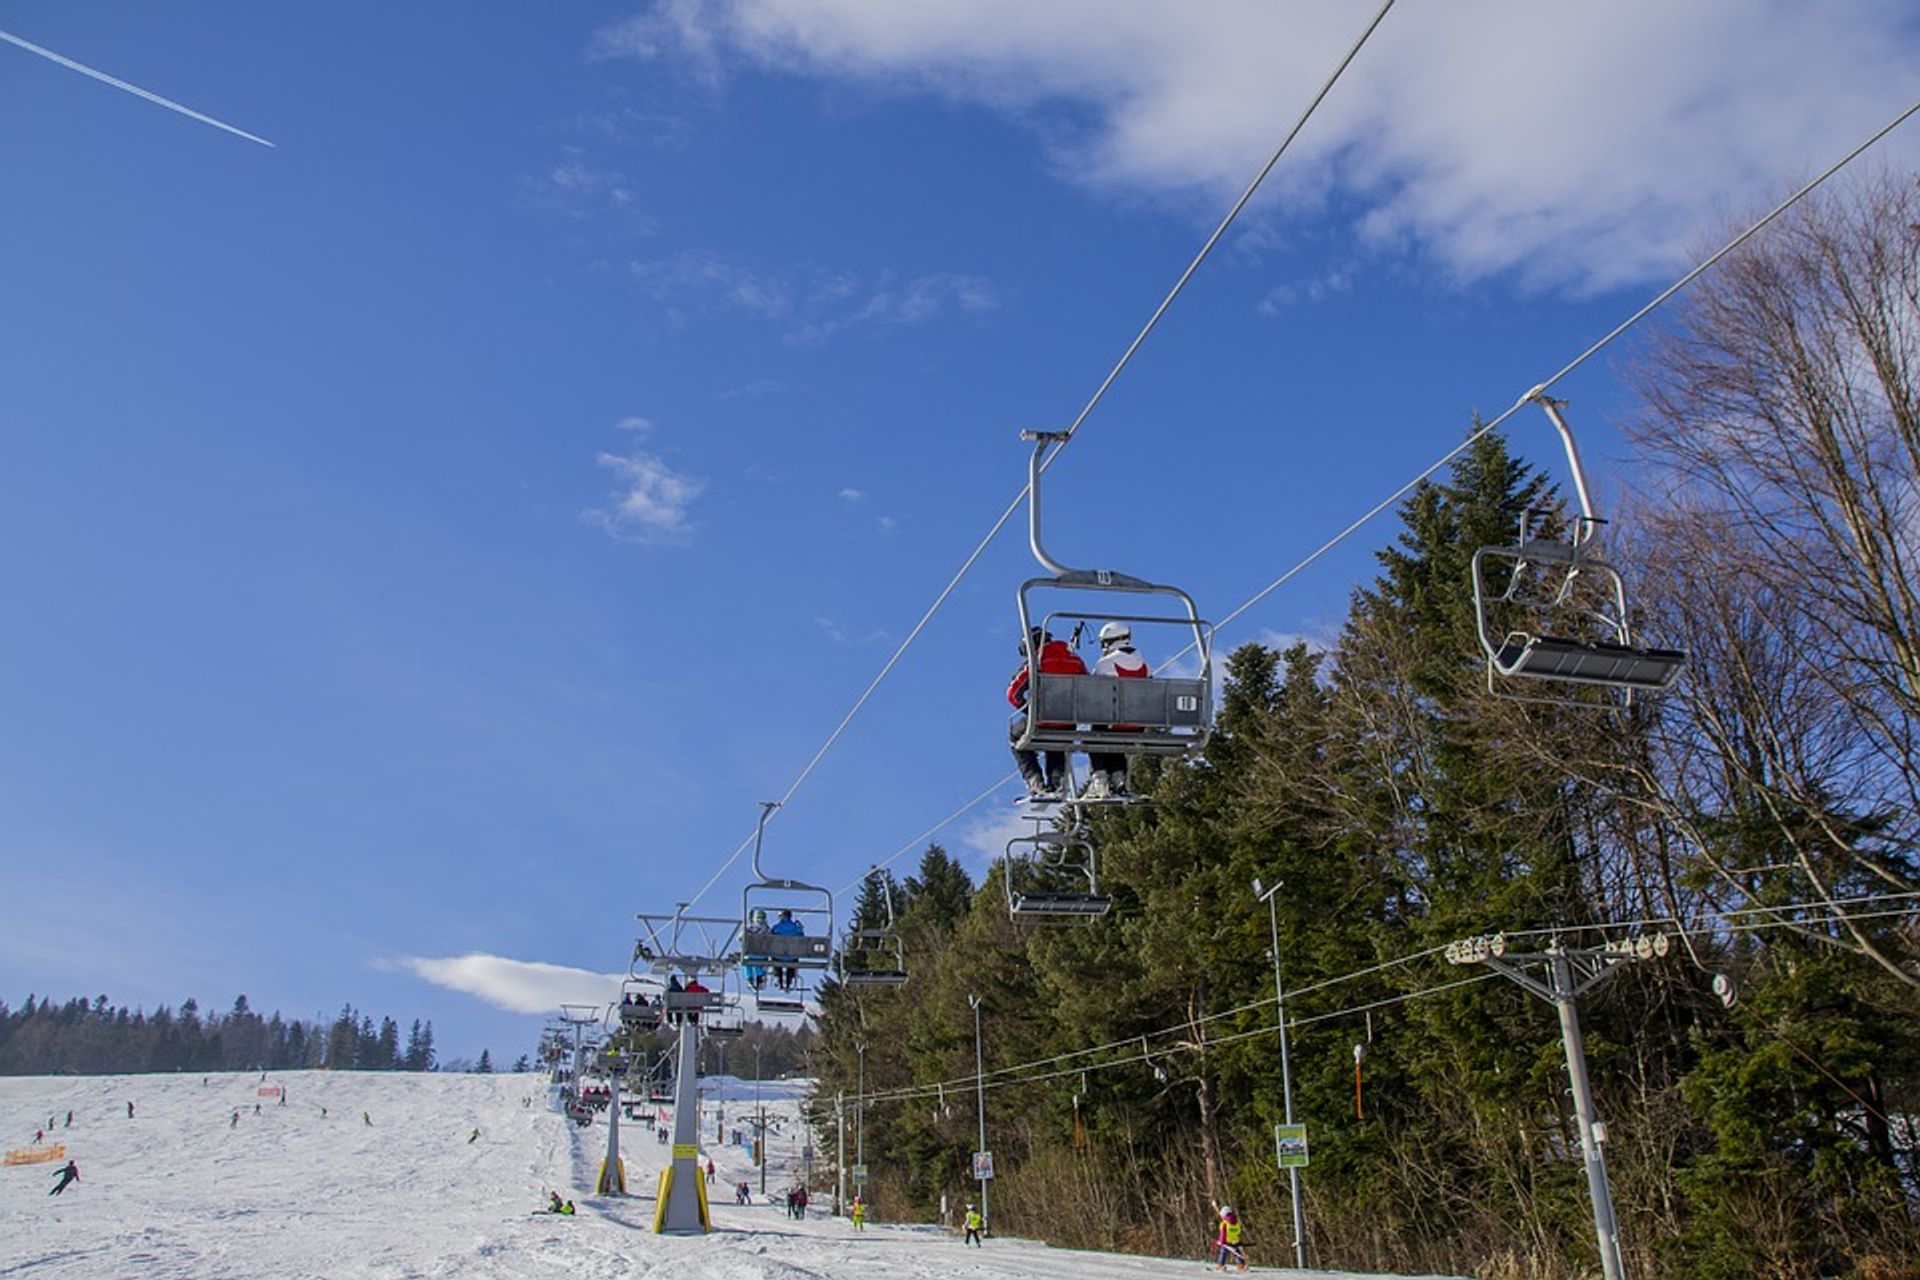  Szykuje się wielka inwestycja narciarsko-rekreacyjna w gminie Podgórzyn